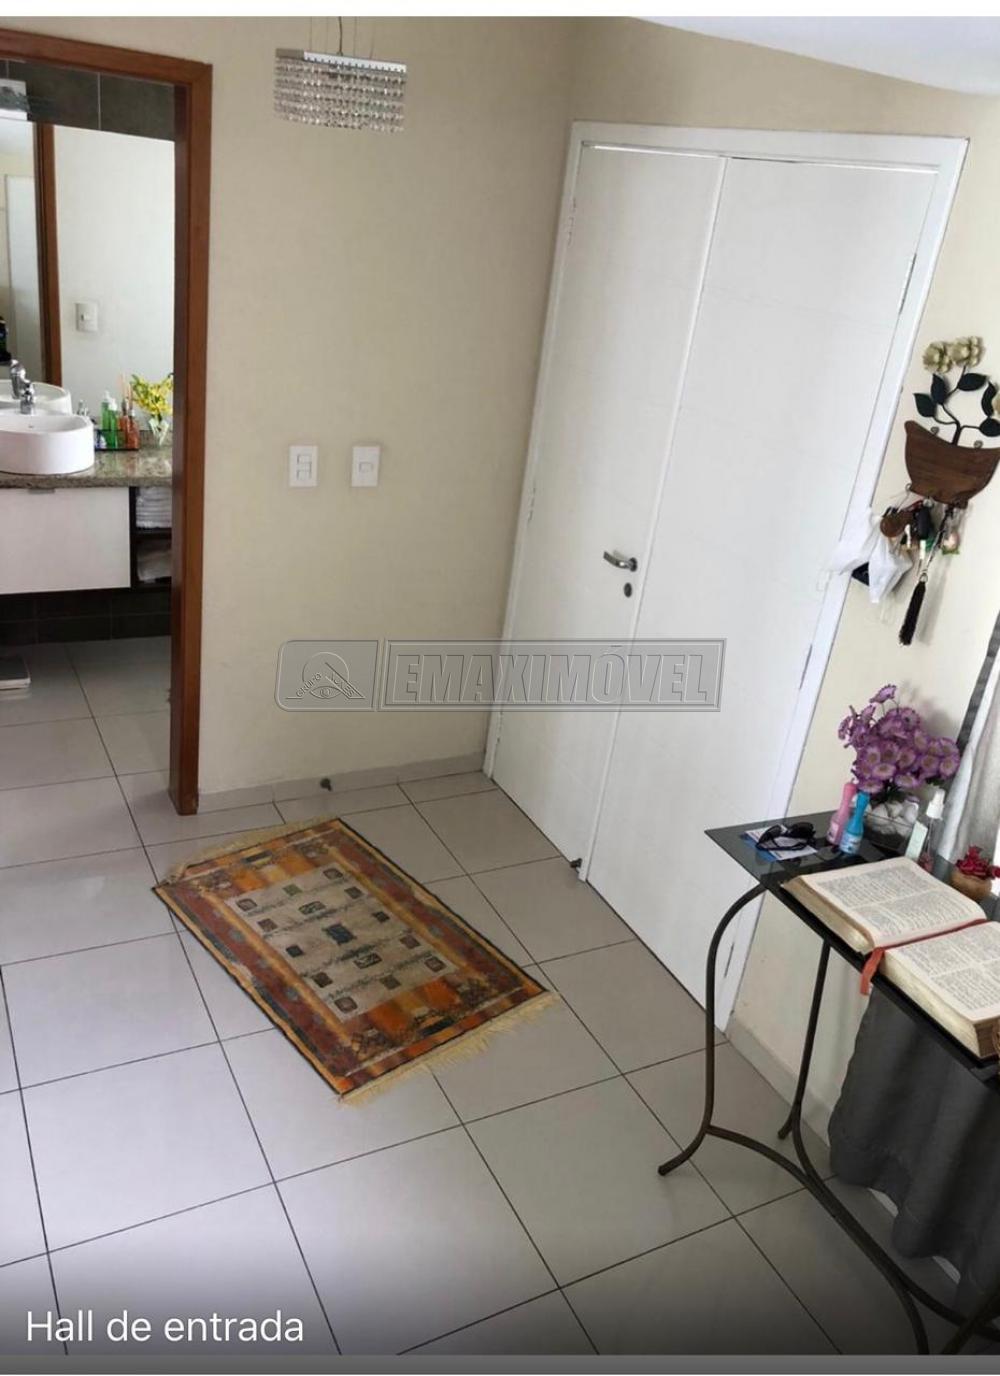 Comprar Casa / em Condomínios em Sorocaba R$ 950.000,00 - Foto 4